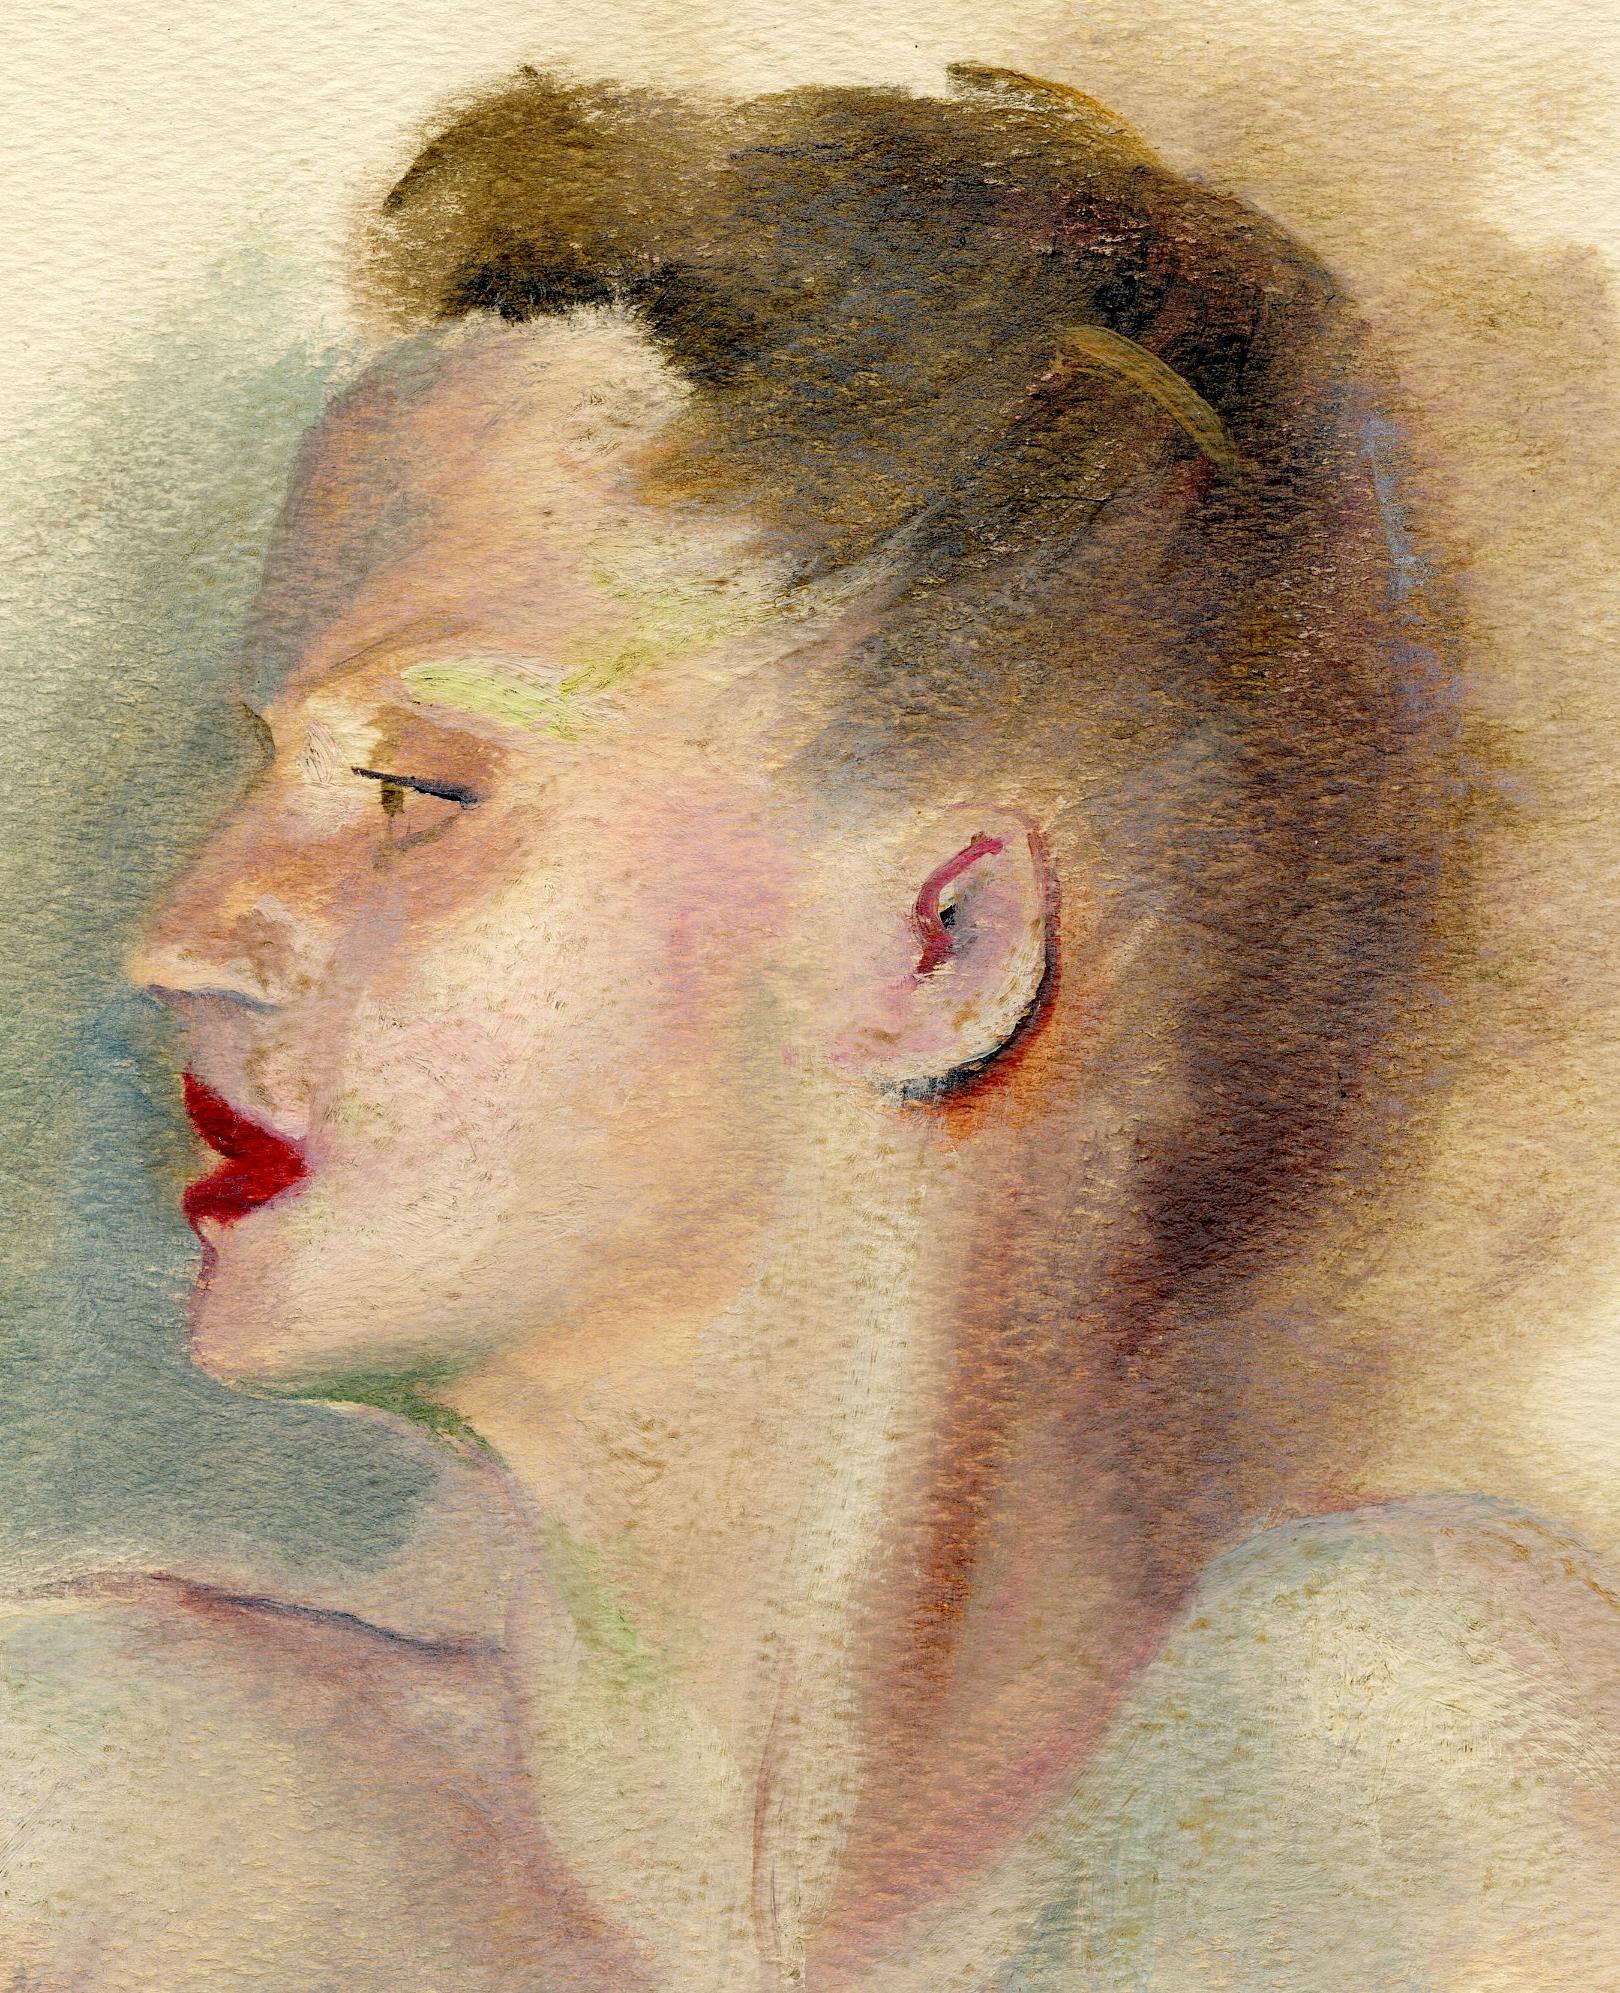 Portia Novella Le Brun oder Stephanie – Painting von Guy Pène Du Bois